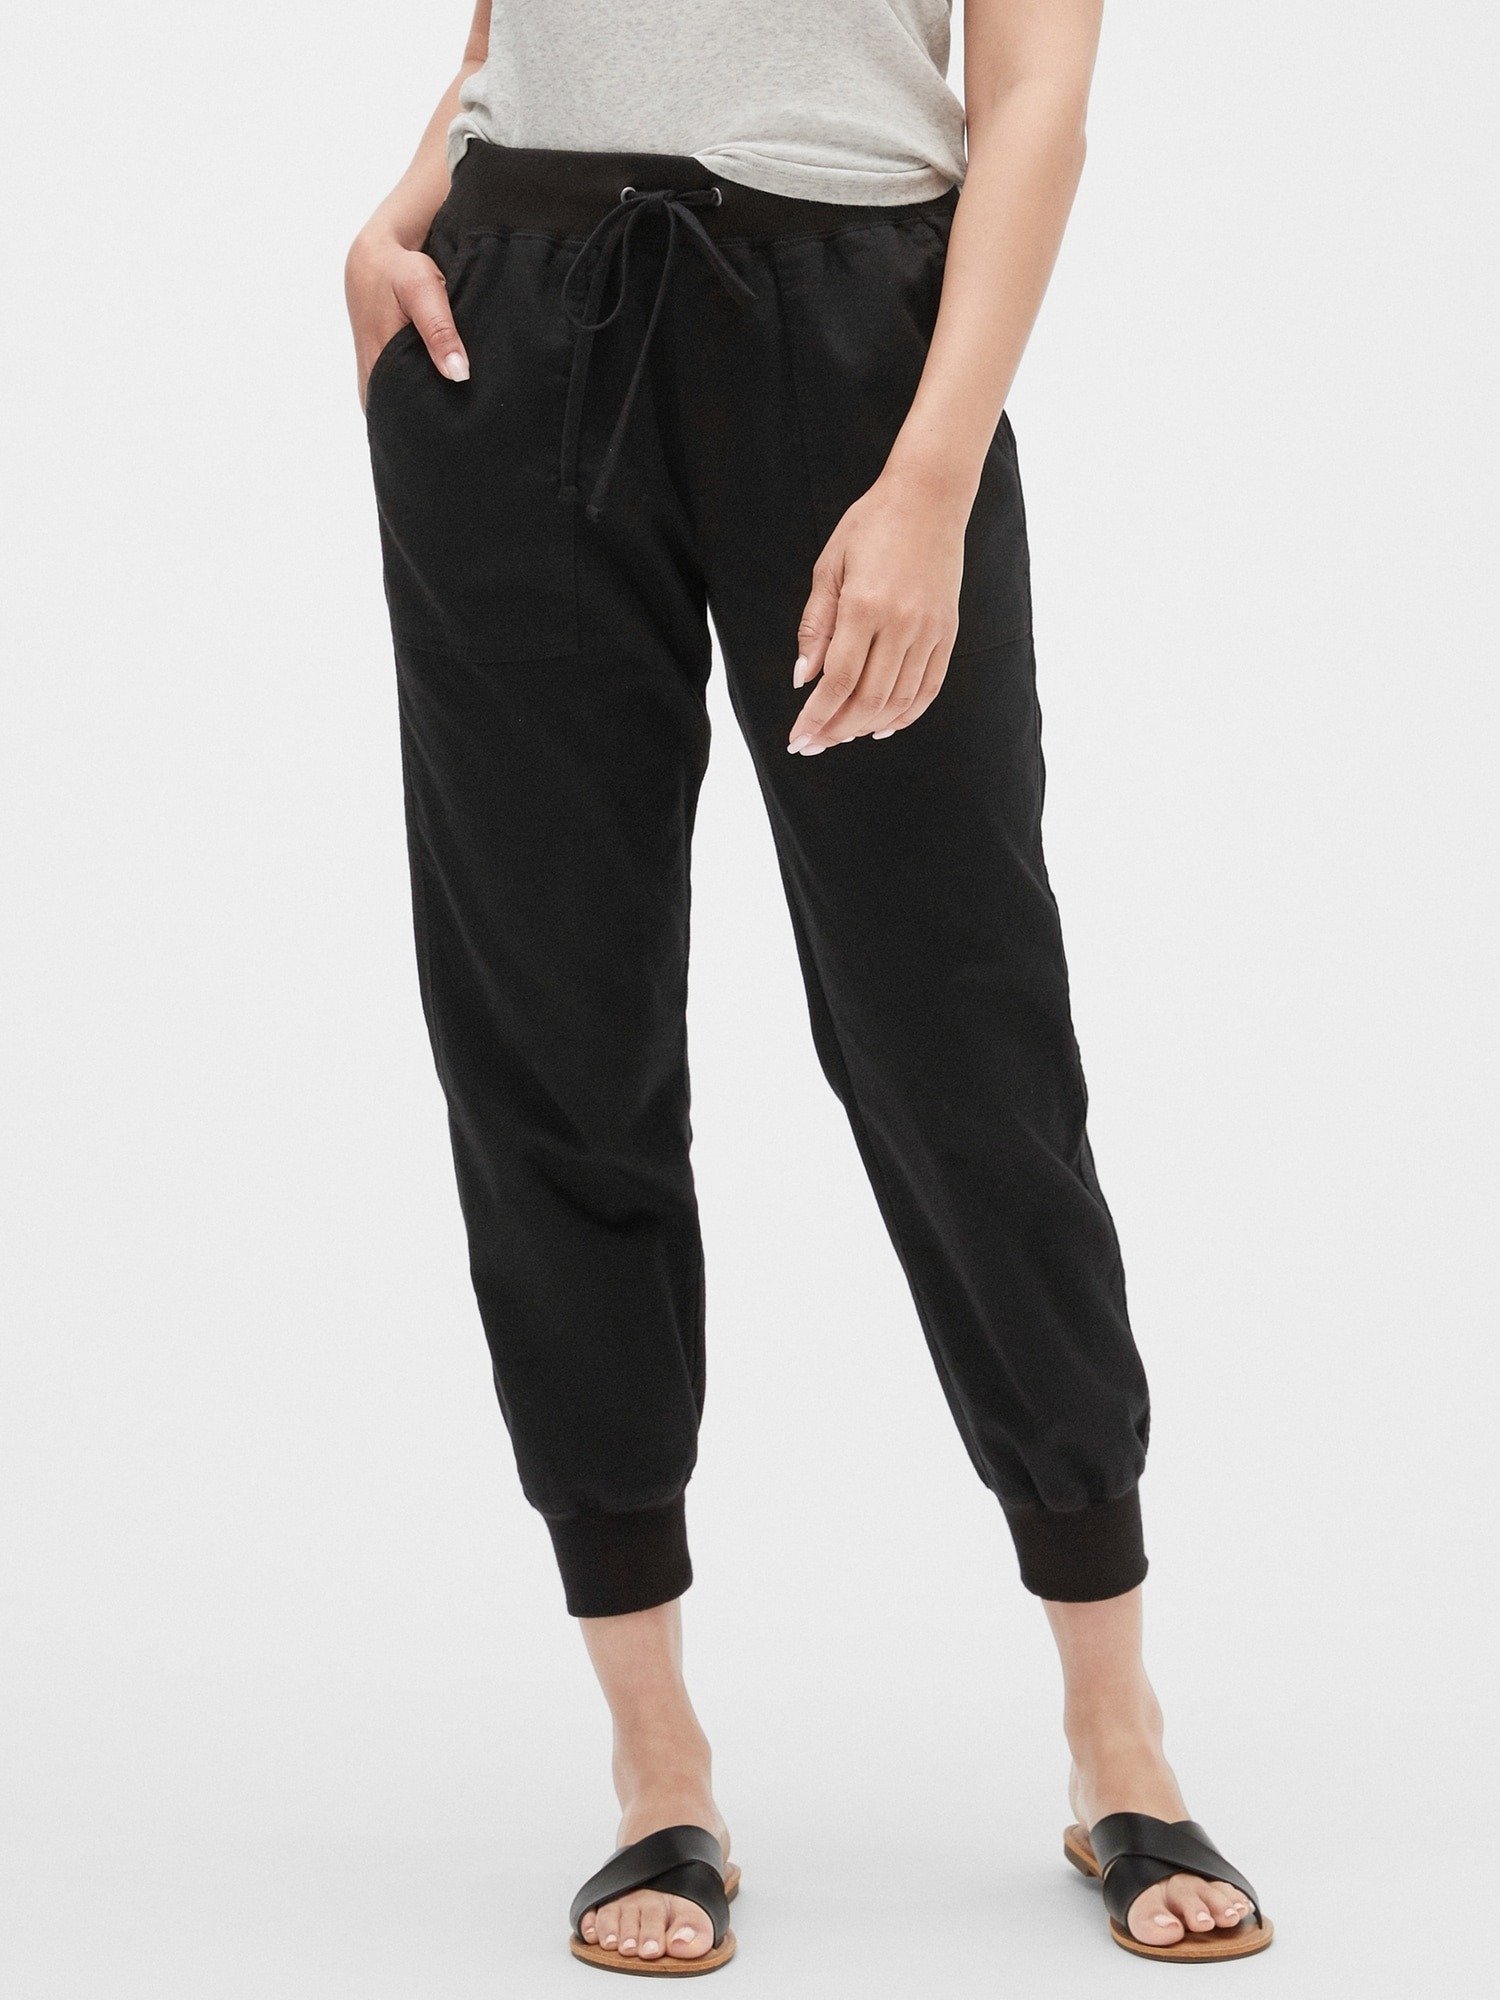 Kadın Jogger Pantolon product image